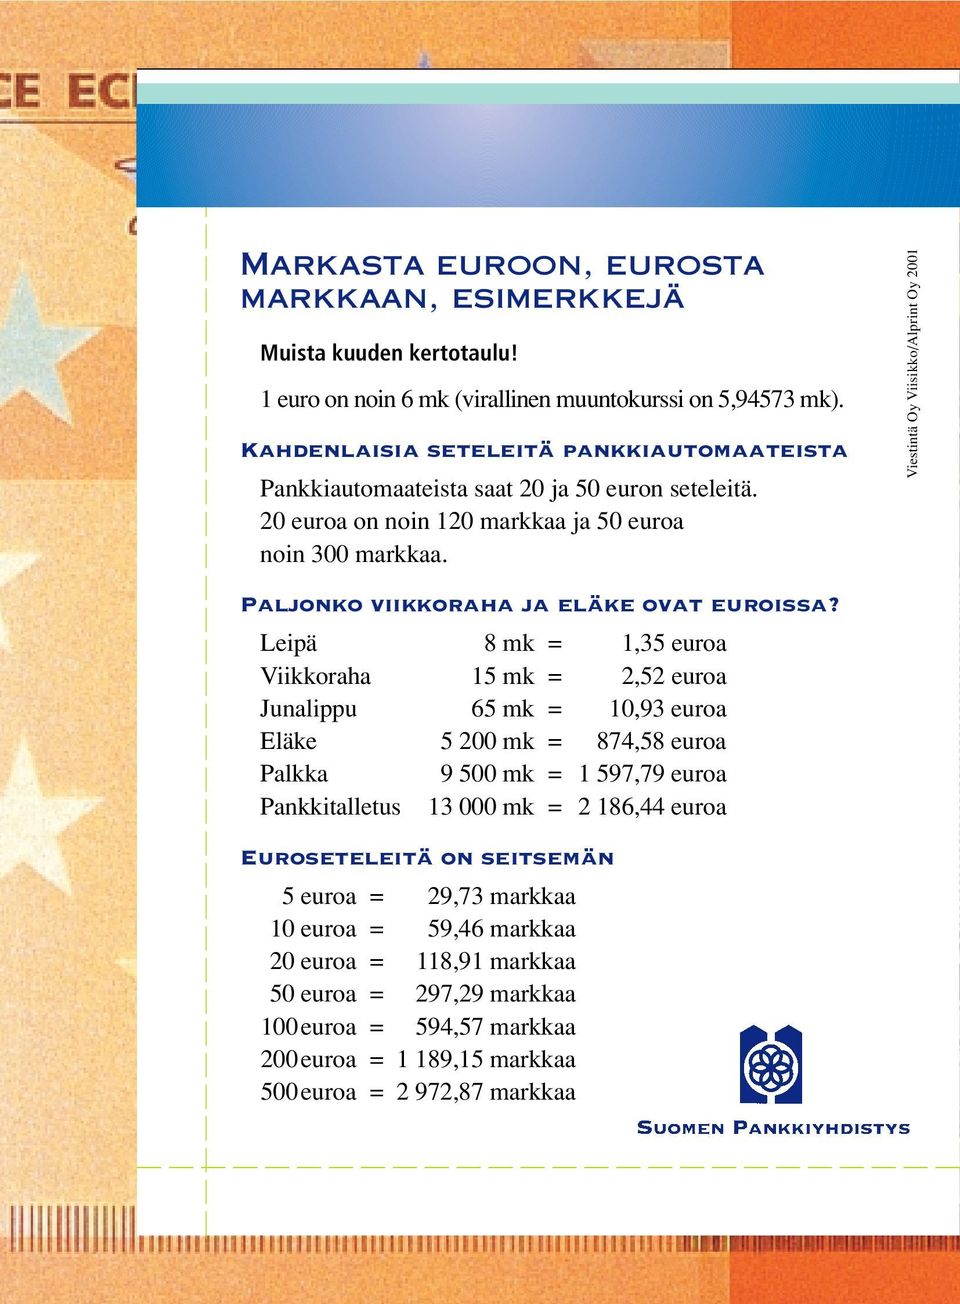 Paljonko viikkoraha ja eläke ovat euroissa?